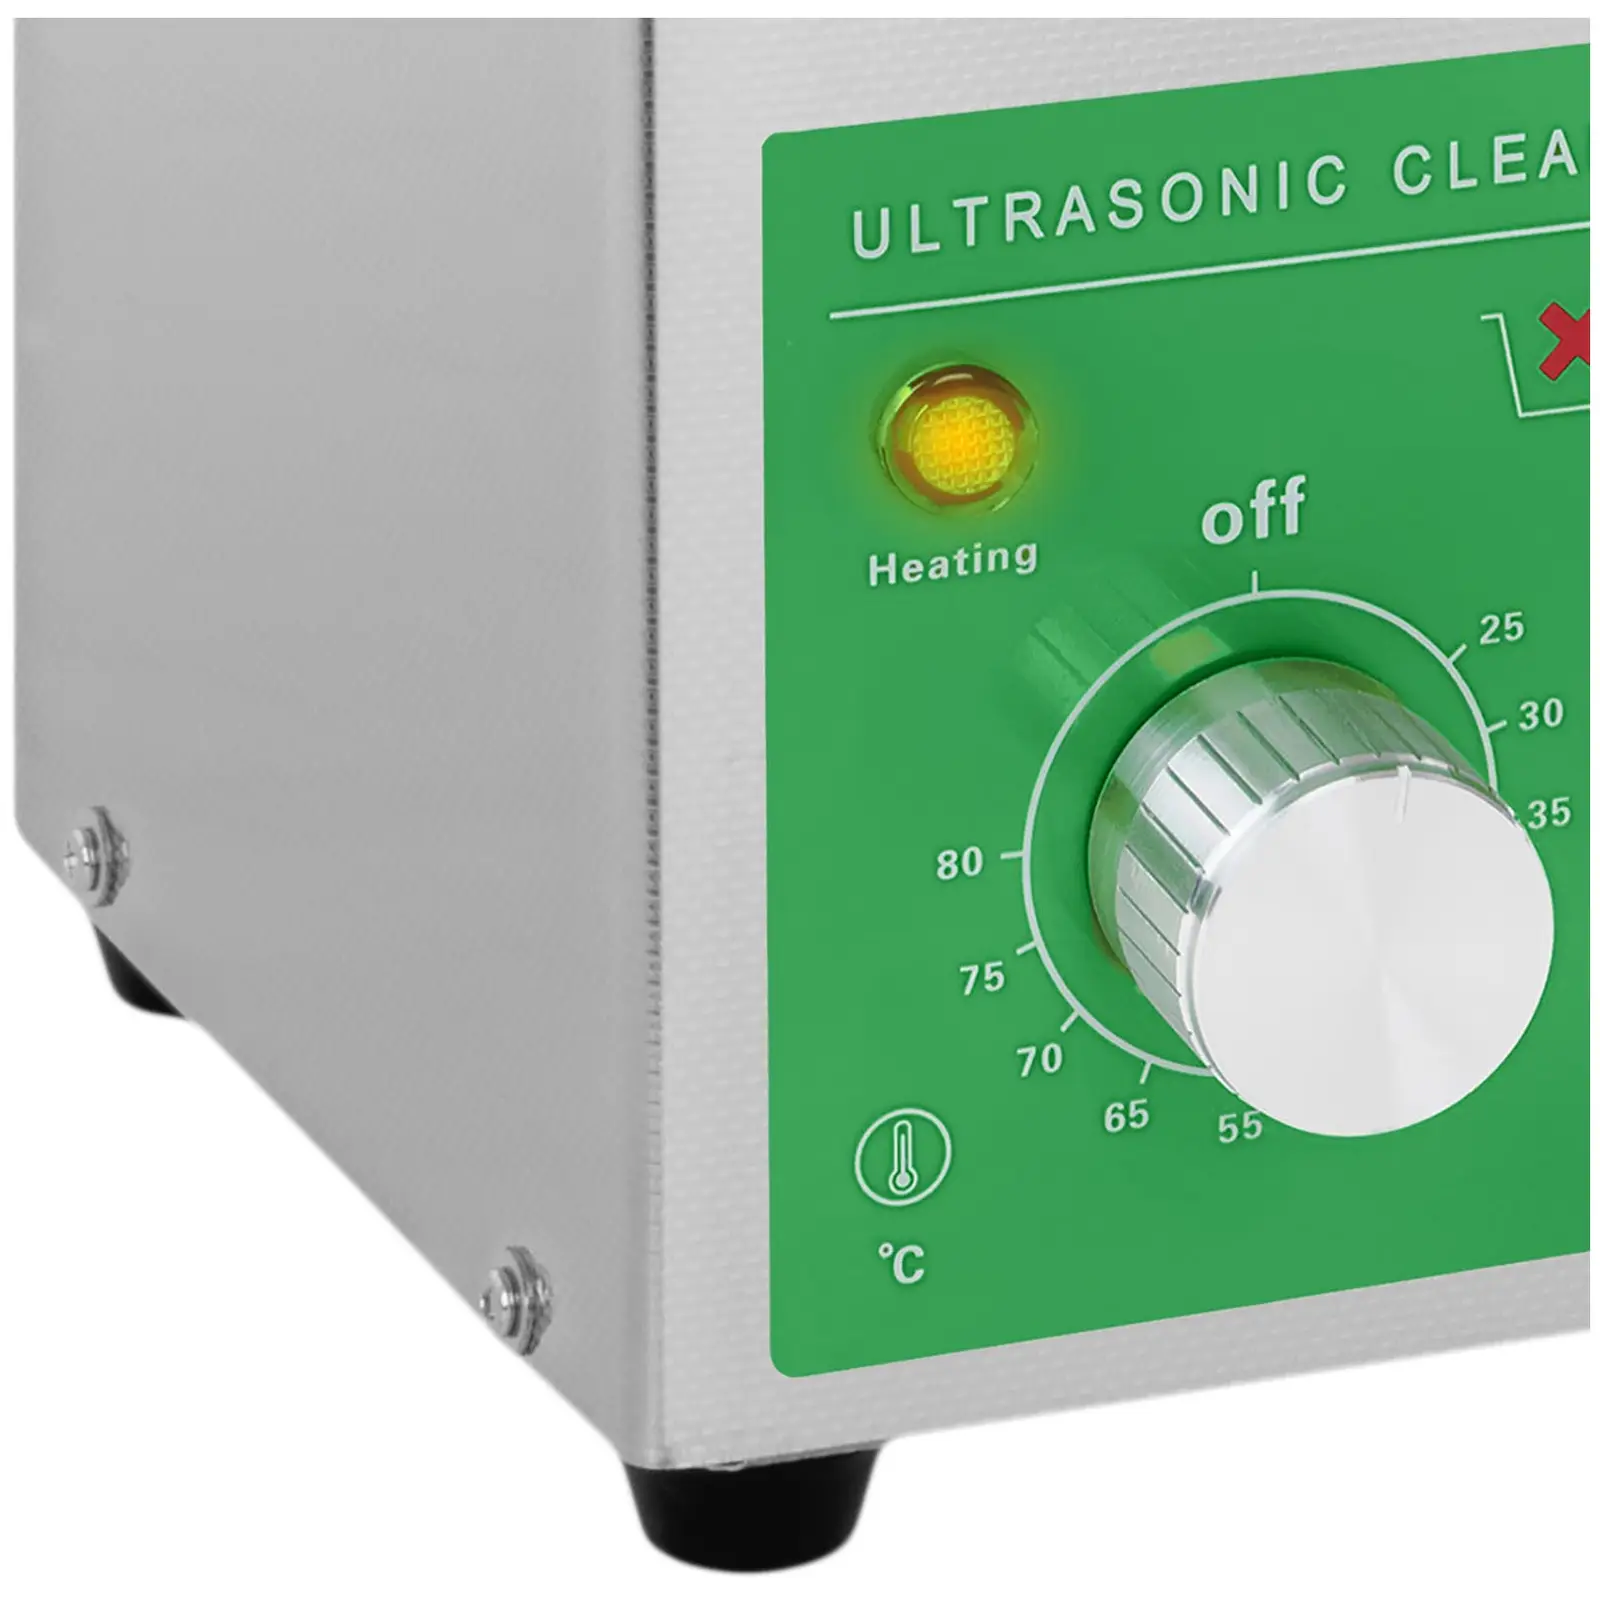 Ultrazvočni čistilec - 2 litra - 60 W - Basic Eco